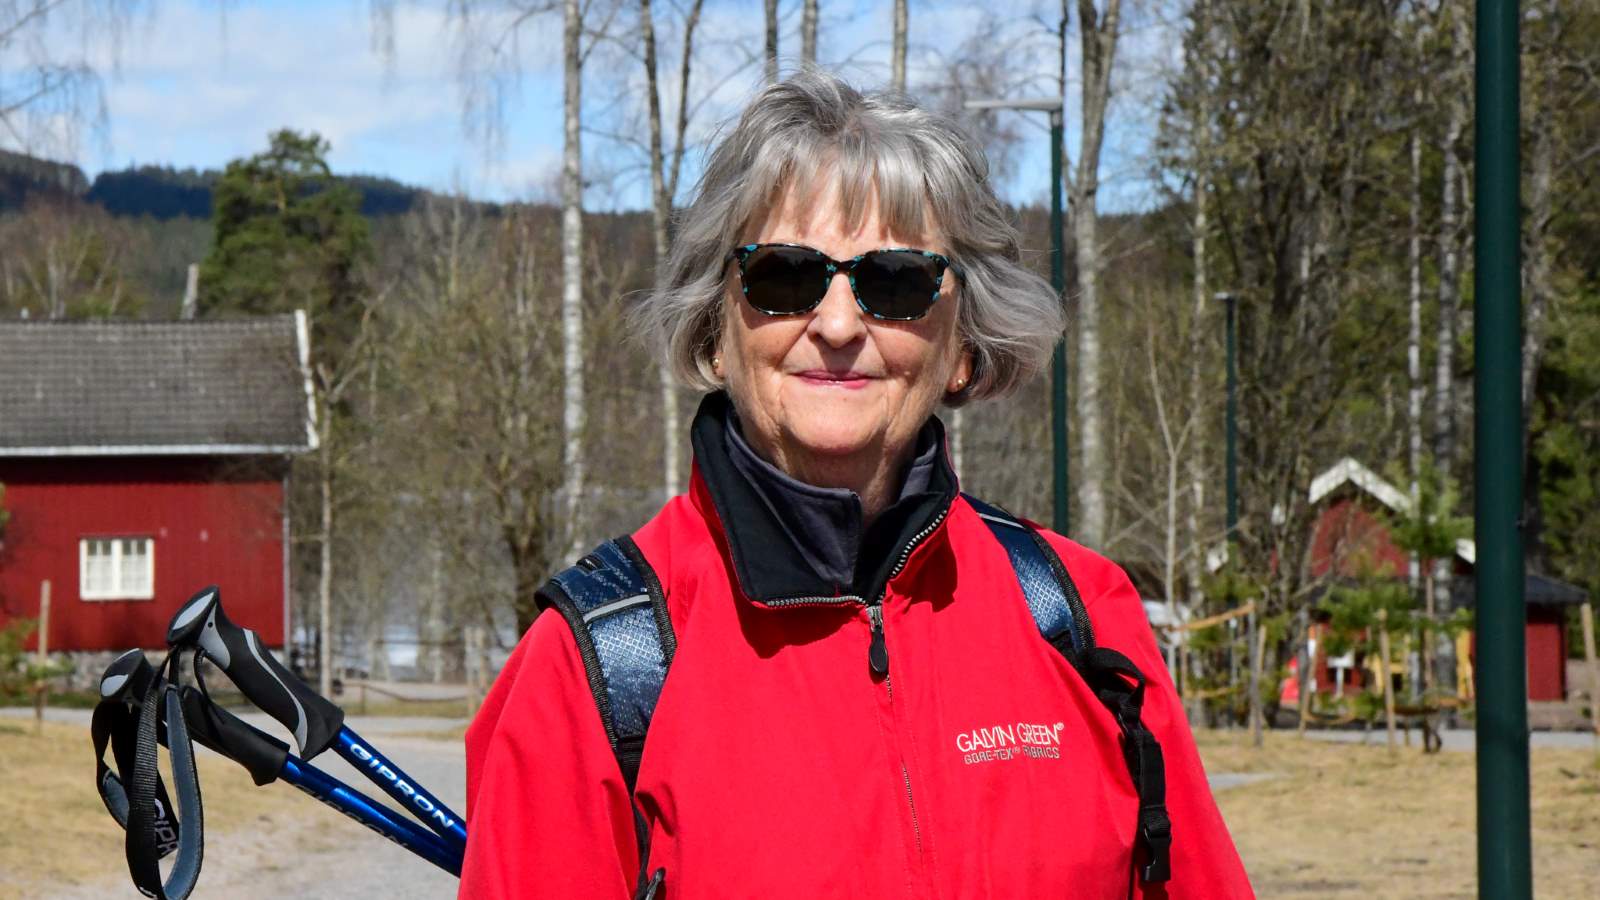 Eldre dame på tur på Sognvann med solbriller i godt vêr.